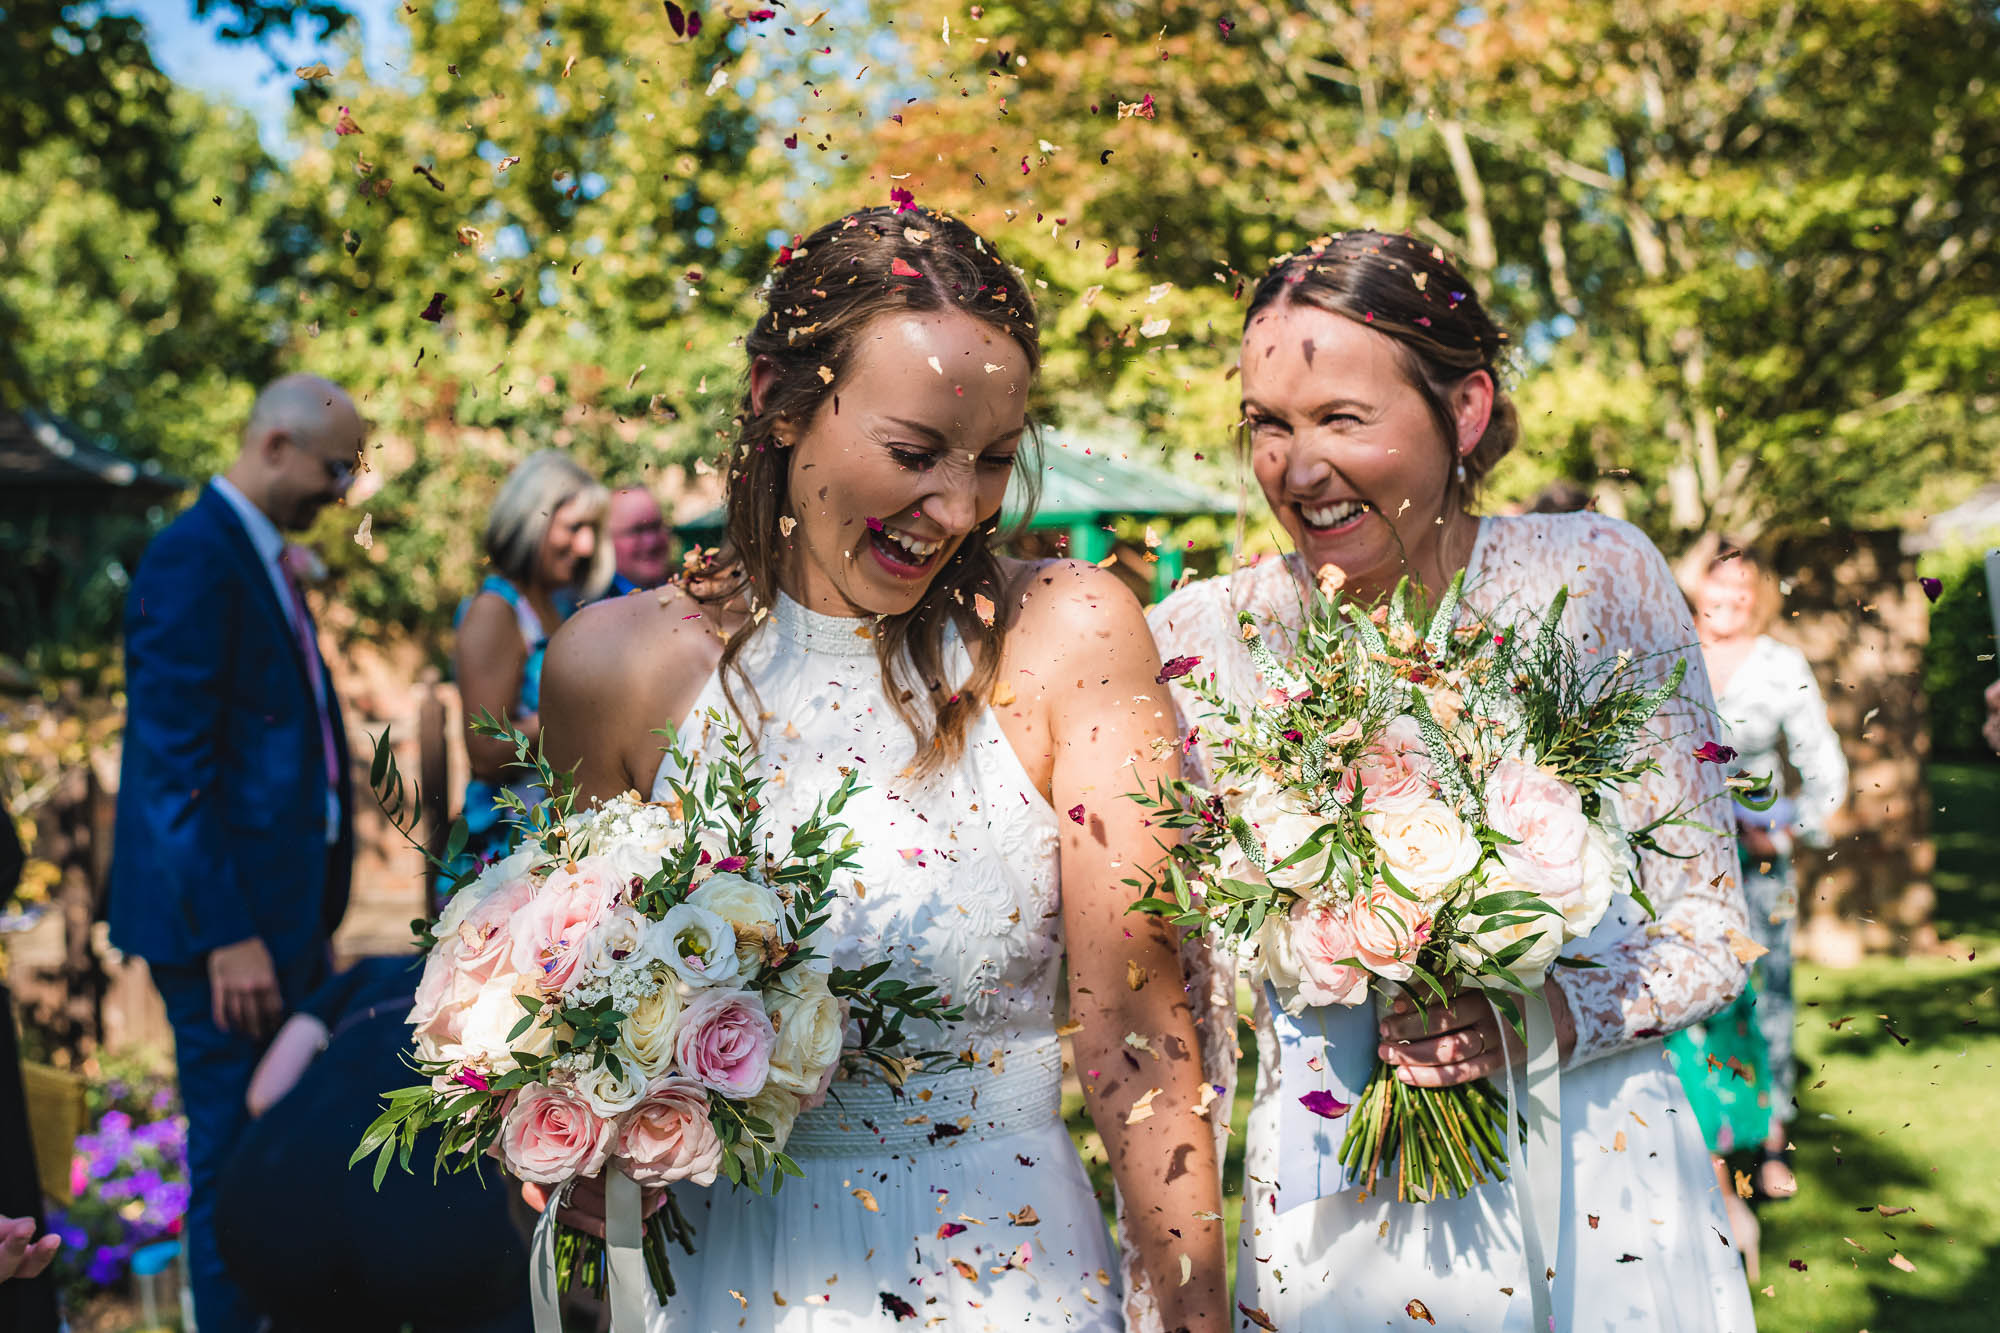 Barnsdale Gardens wedding – Katie & Laura